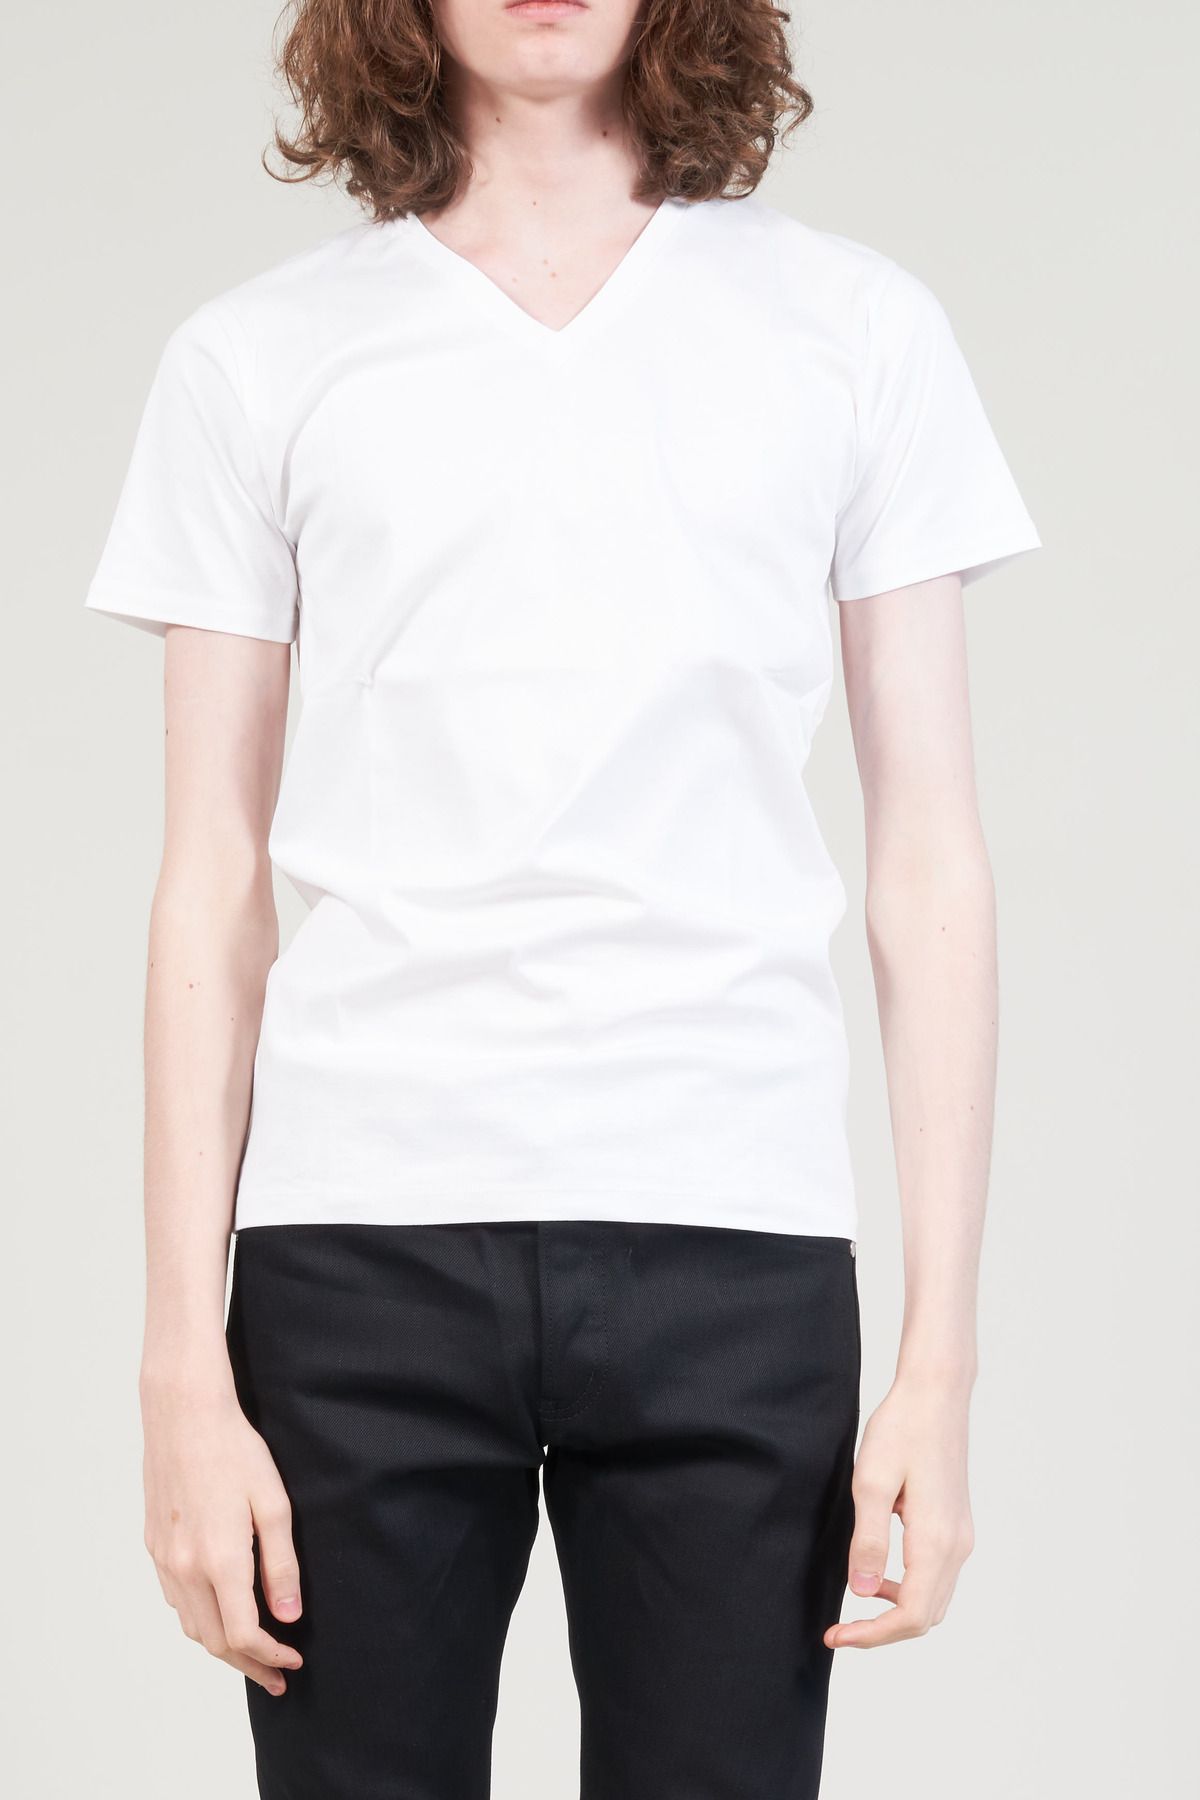 GalaabenD ロンT シャツ Tシャツ/カットソー(七分/長袖) トップス メンズ インターネット通販